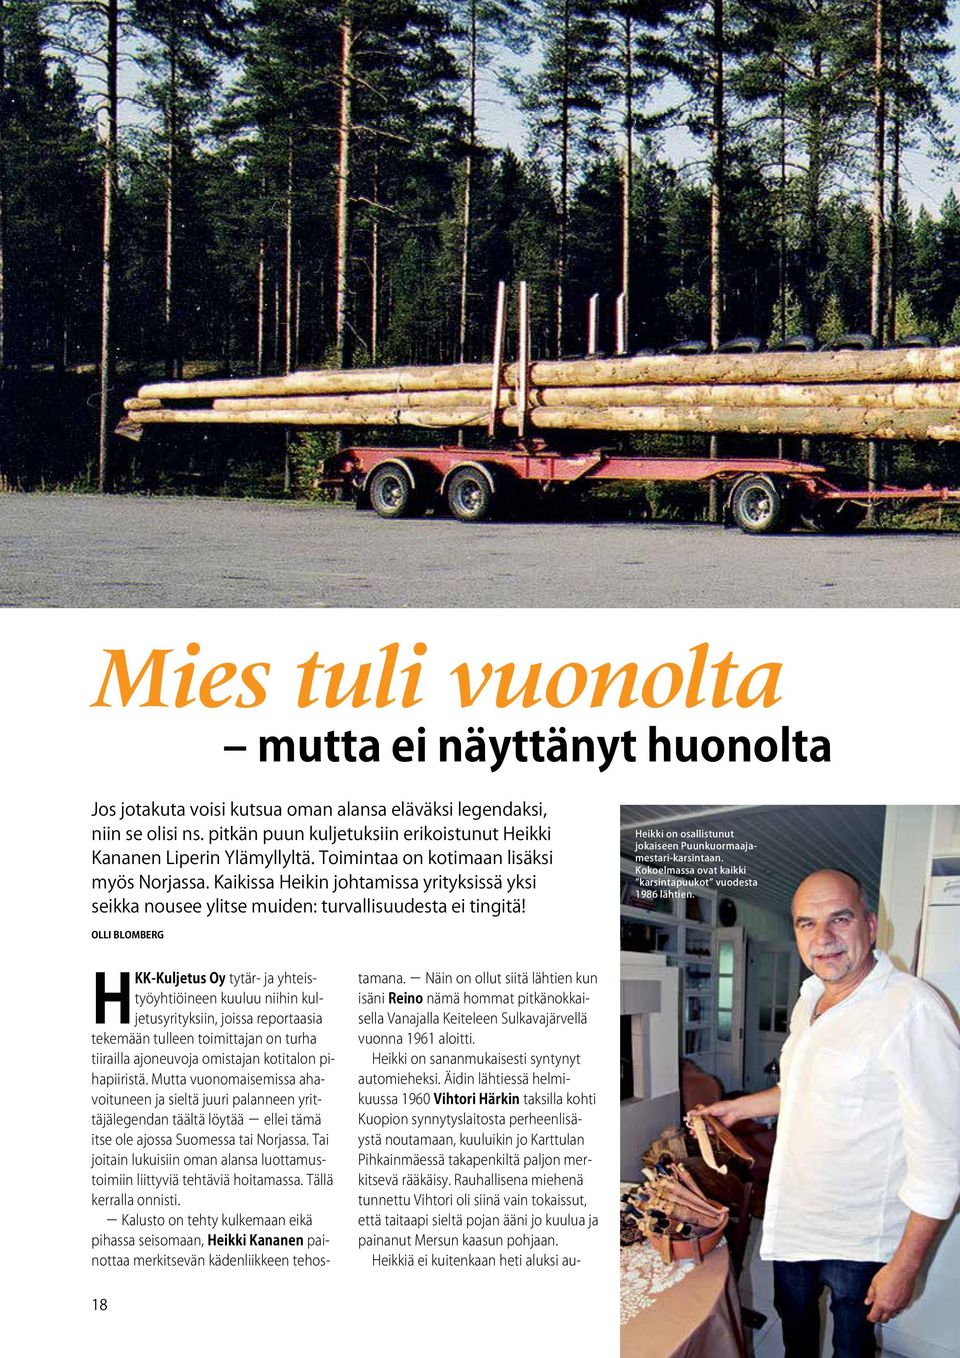 Heikki on osallistunut jokaiseen Puunkuormaajamestari-karsintaan. Kokoelmassa ovat kaikki karsintapuukot vuodesta 1986 lähtien.